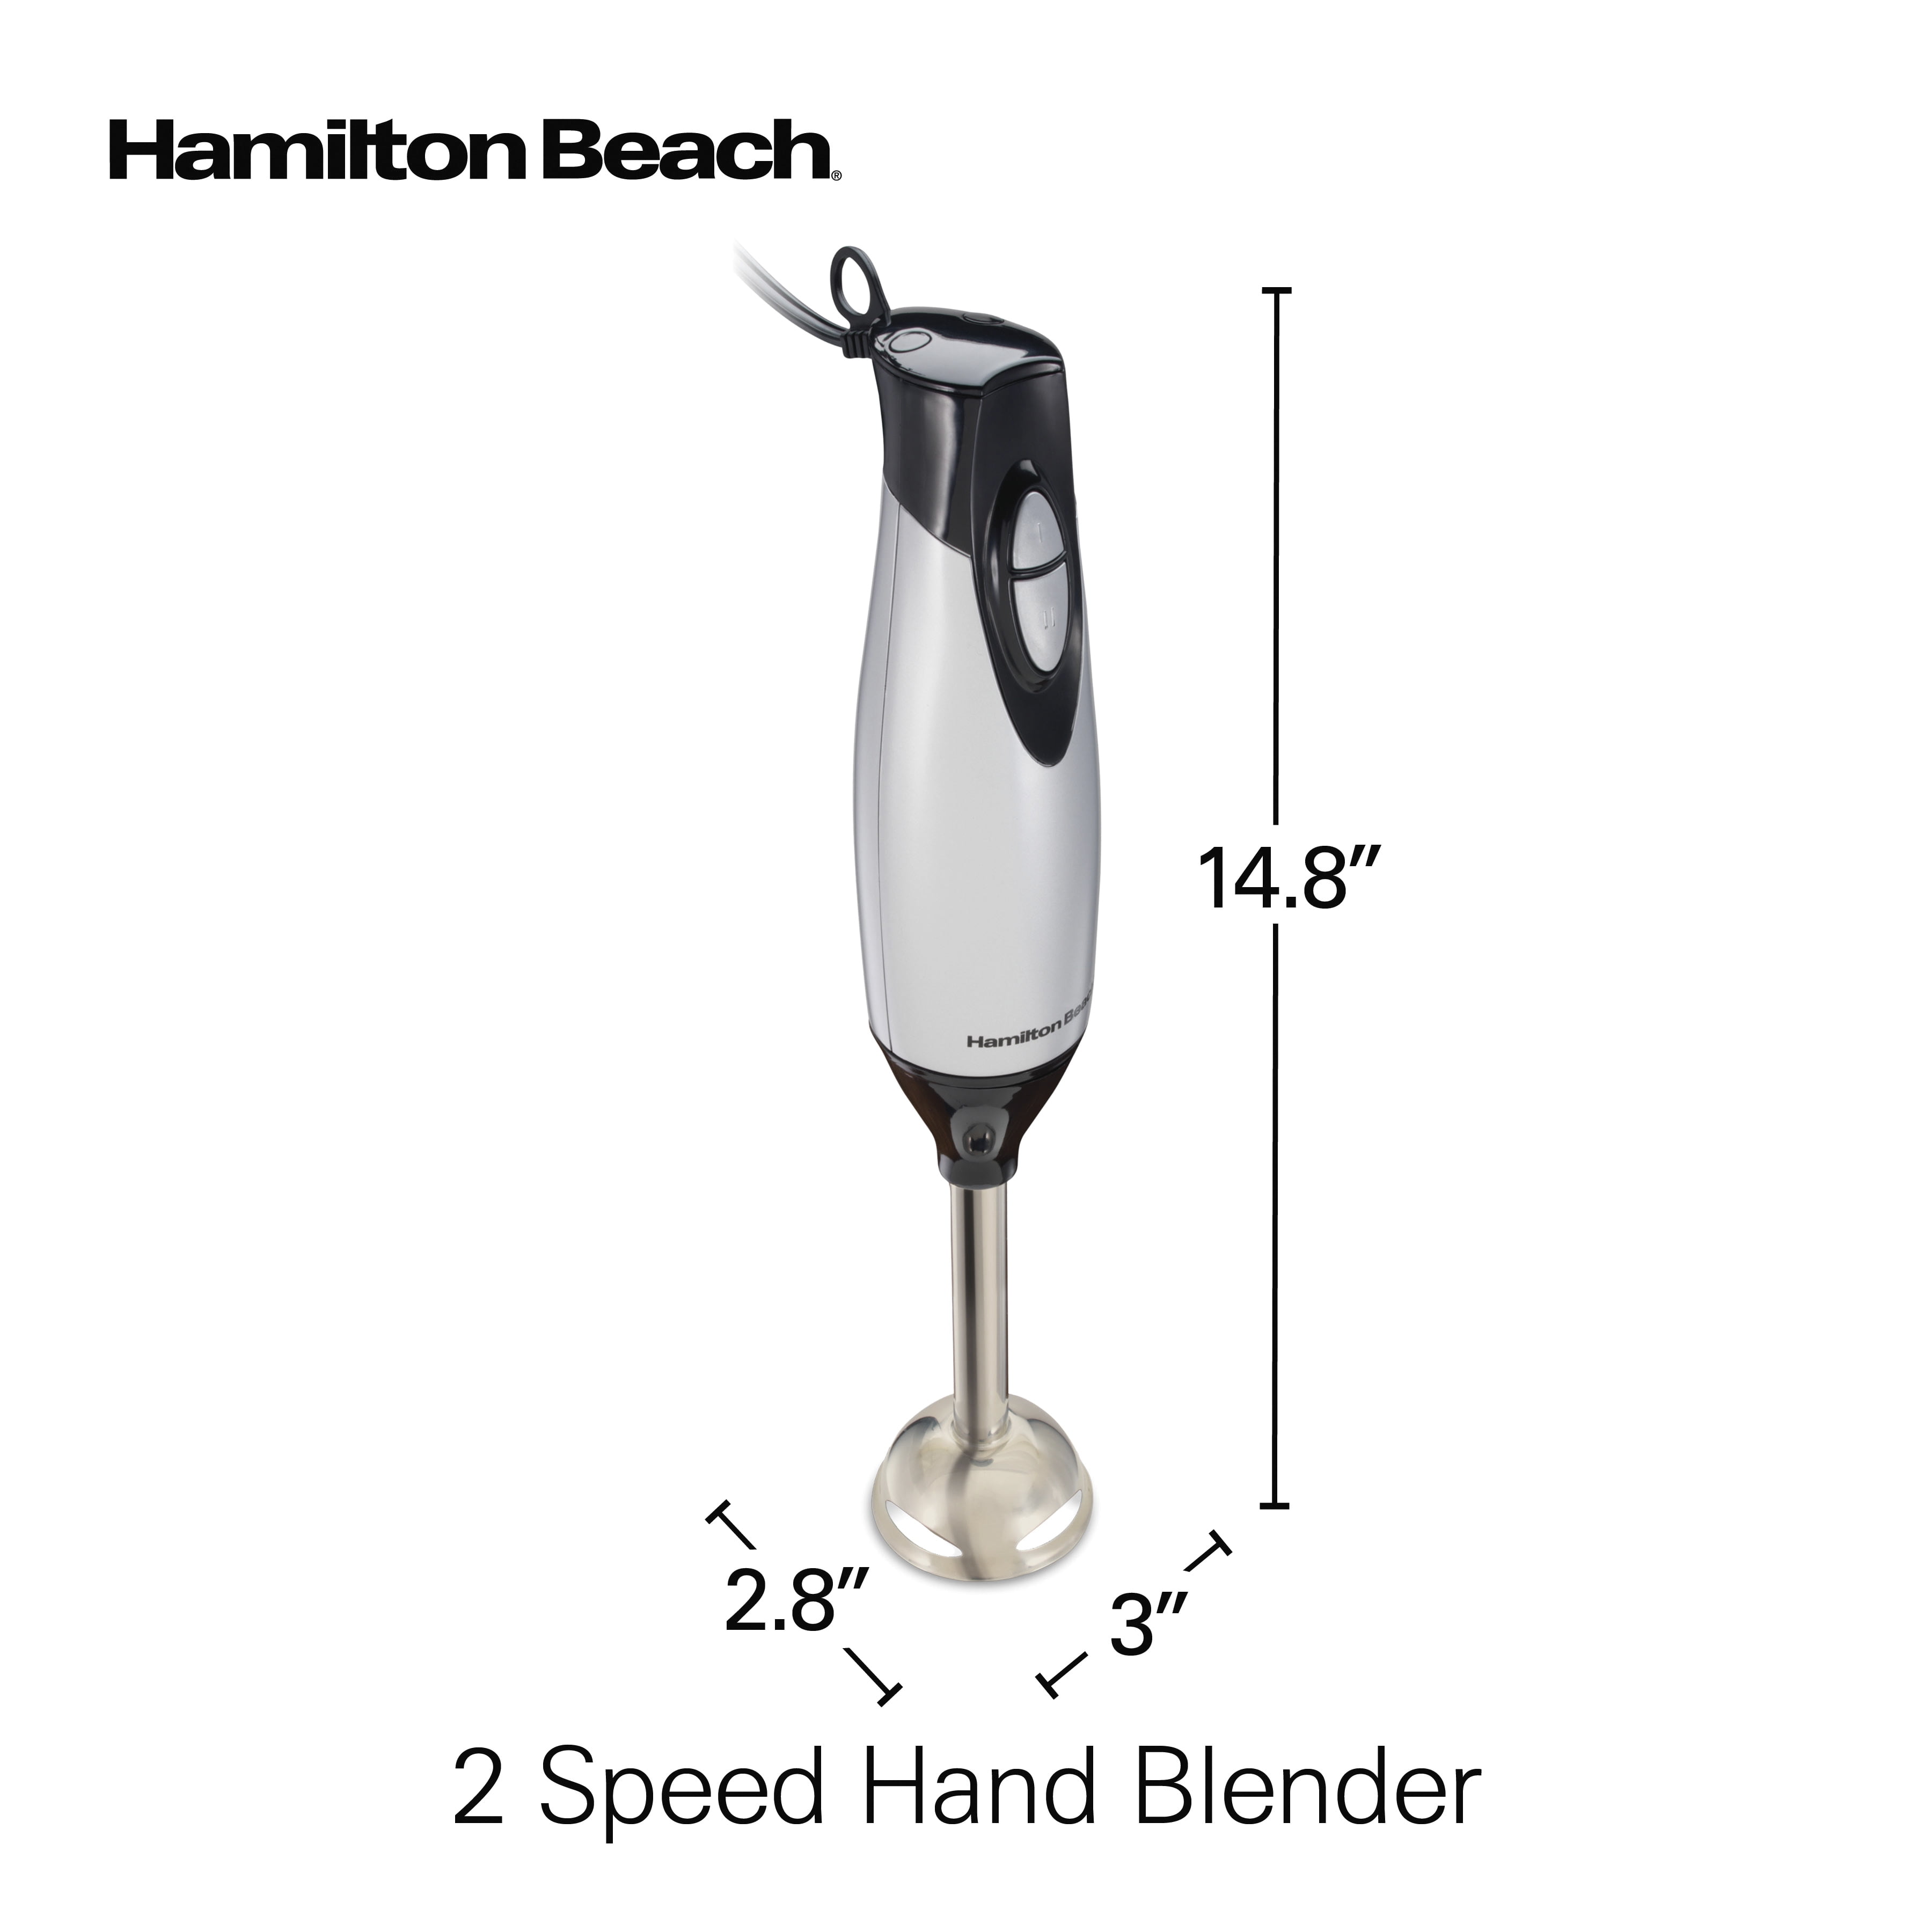 Hamilton Beach hand blender emulsifier brand new in box for Sale